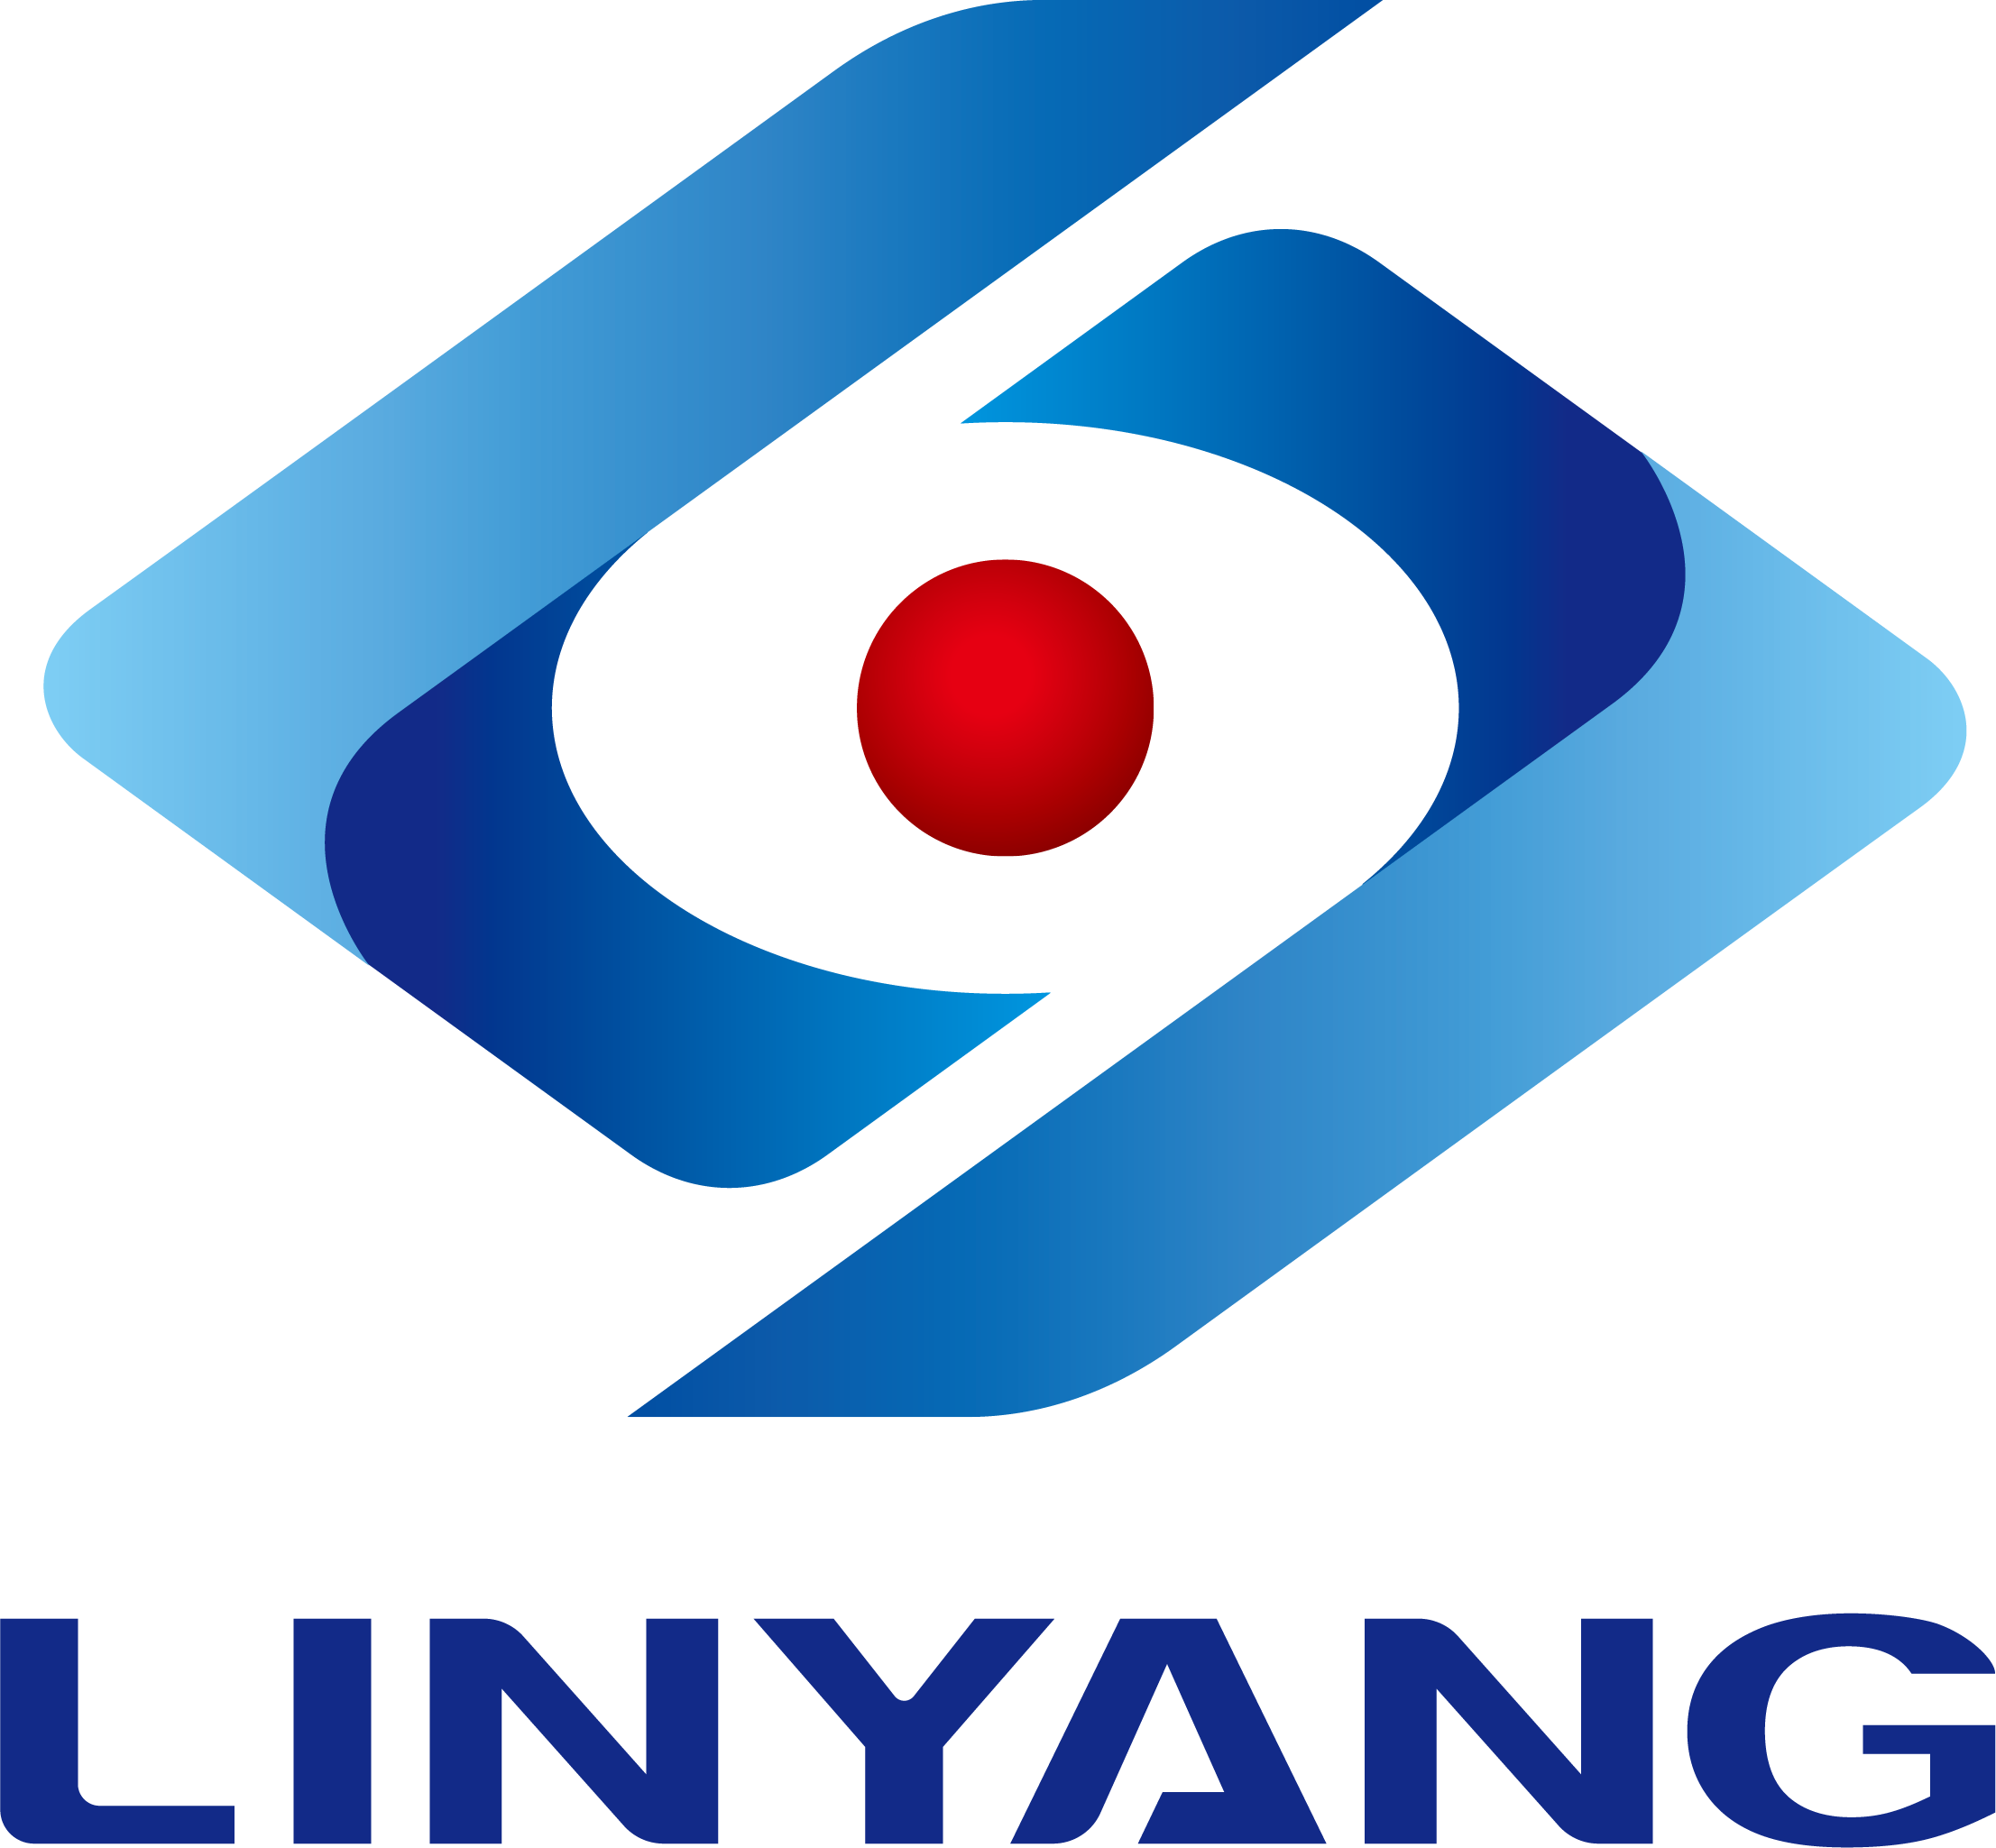 L'operació i manteniment FOTOVOLTAIC de Linyang va obtenir la certificació d'operació i manteniment de TUV Rhine